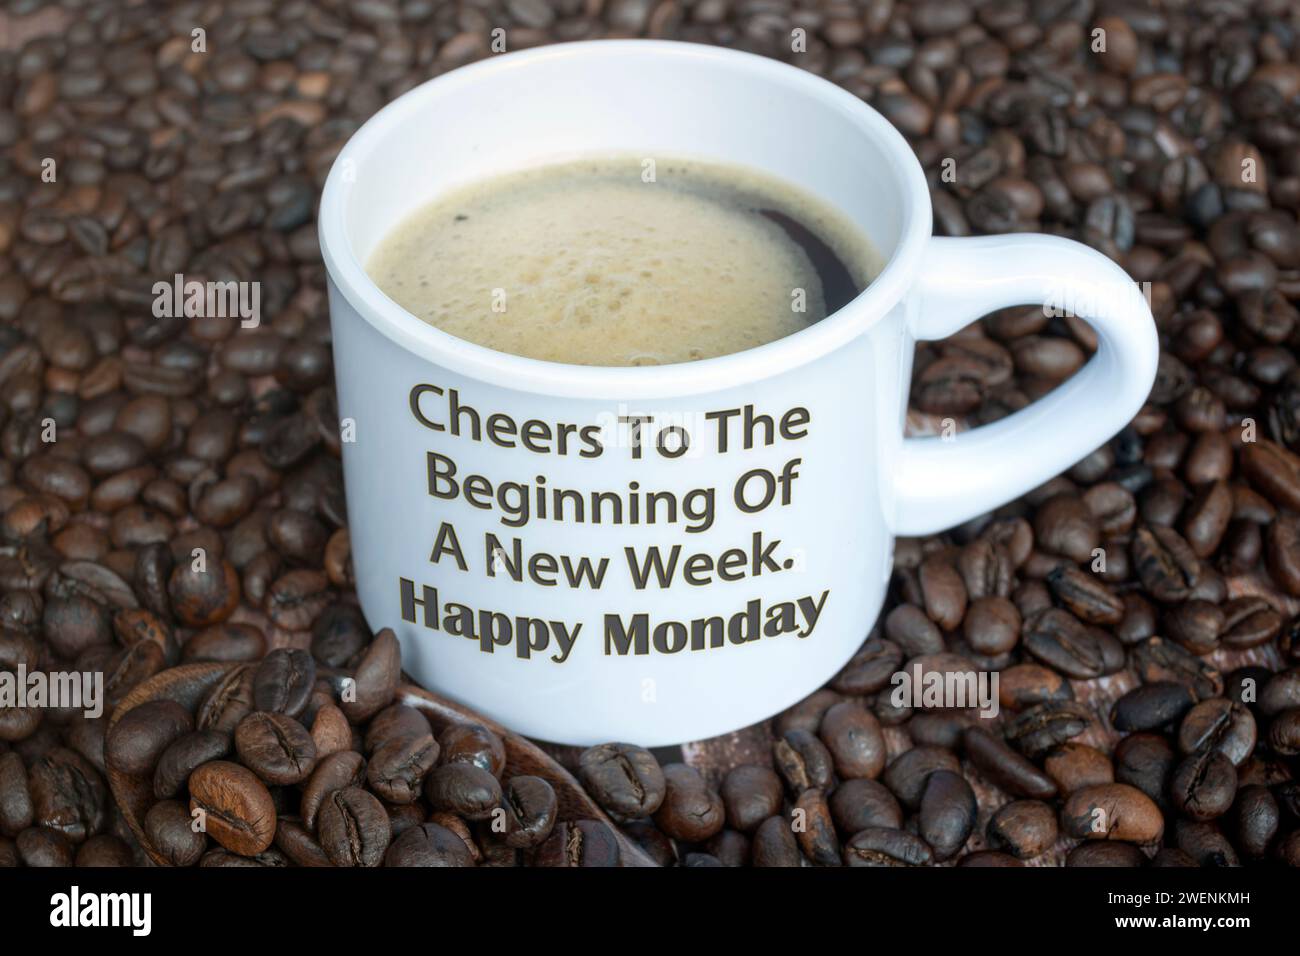 Motivierendes Zitat auf einer Tasse Kaffee mit Bohnen Hintergrund - Cheers to the Start of the New Week. Happy monday. Stockfoto